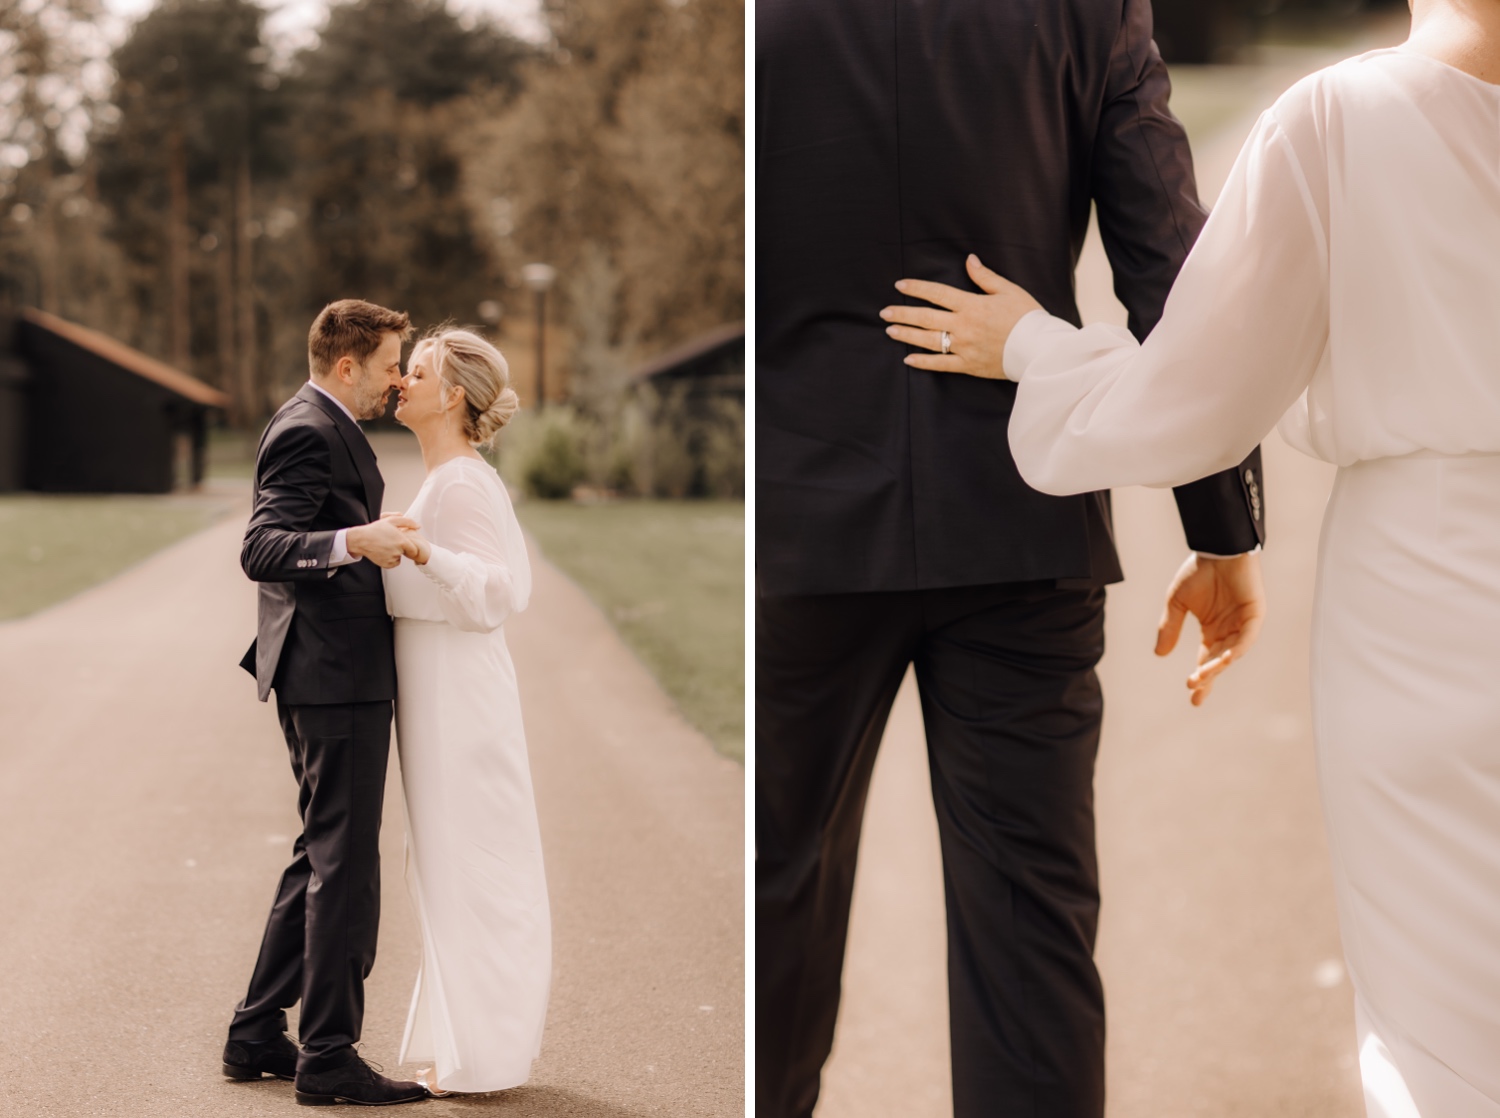 Huwelijksfotograaf Limburg - details van de handen van het bruidspaar tijdens fotoshoot